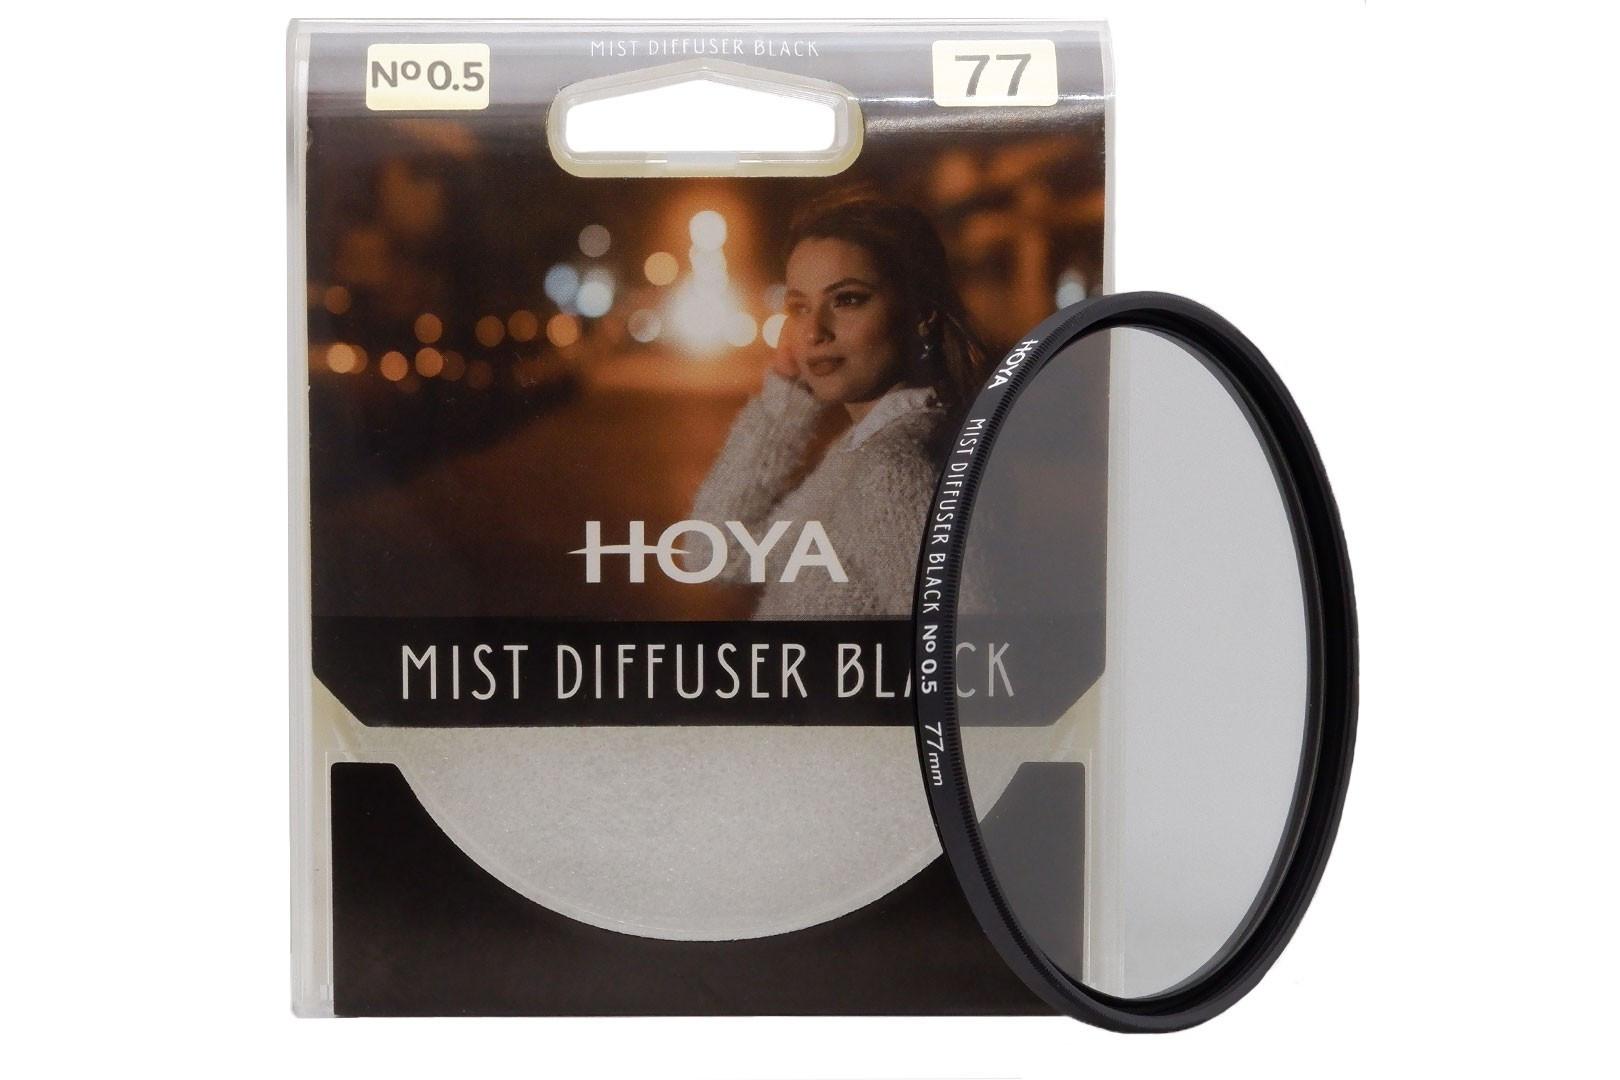 Hoya  Hoya Y505307 filtre pour appareils photo Filtre de caméra de diffusion 7,7 cm 